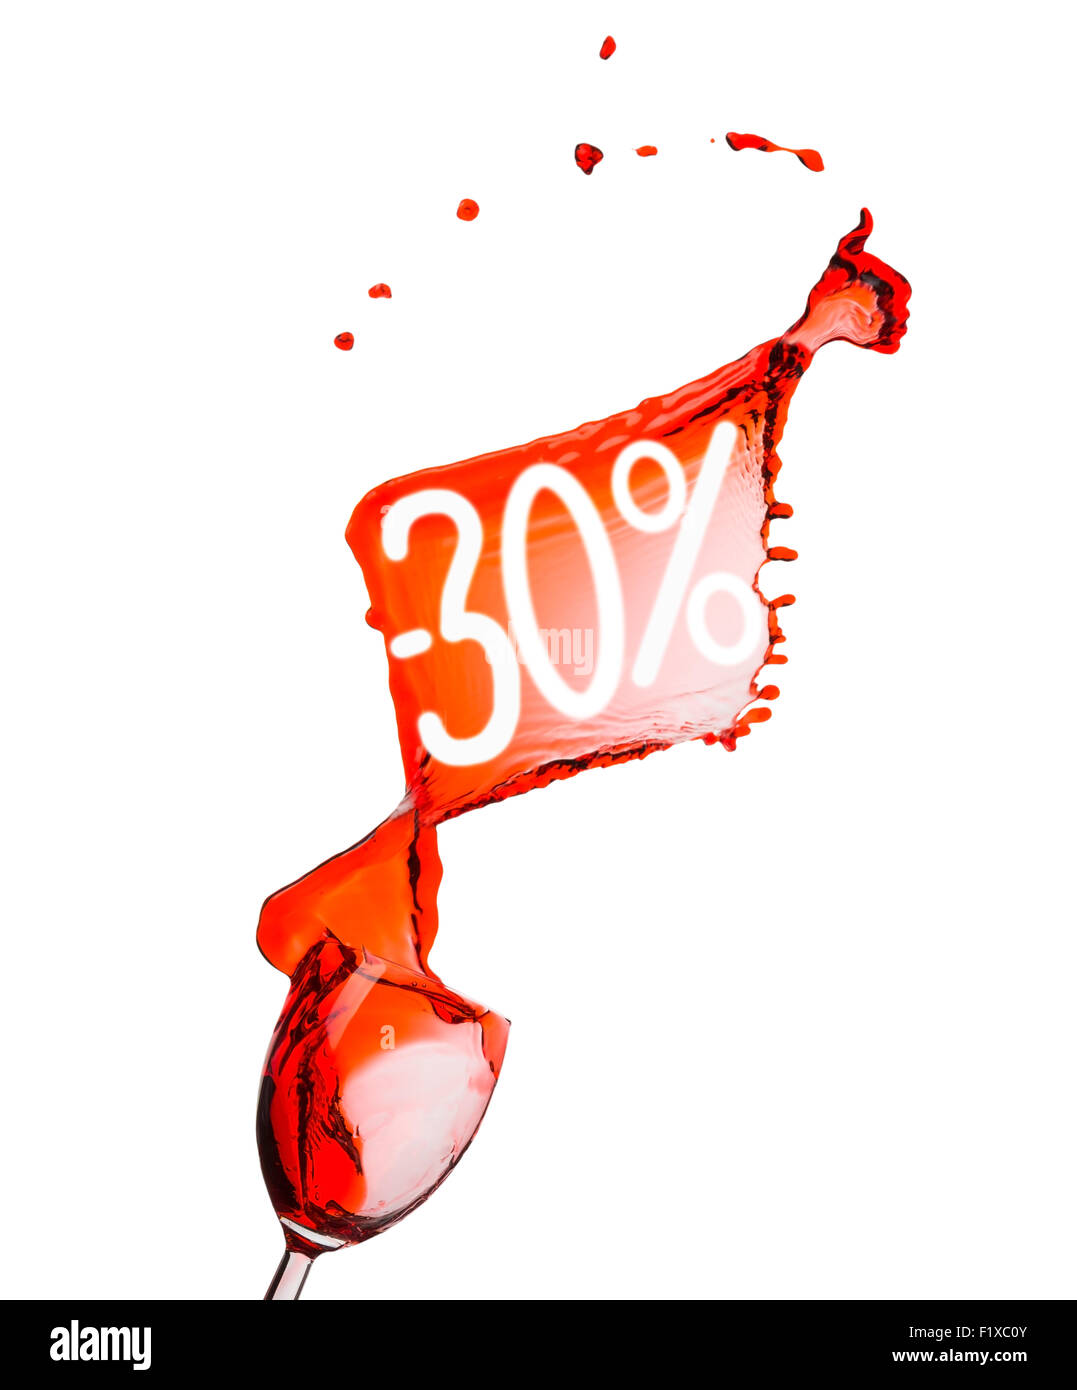 Vino rosso splash. 30 percento di sconto. Isolato su sfondo bianco. Foto Stock